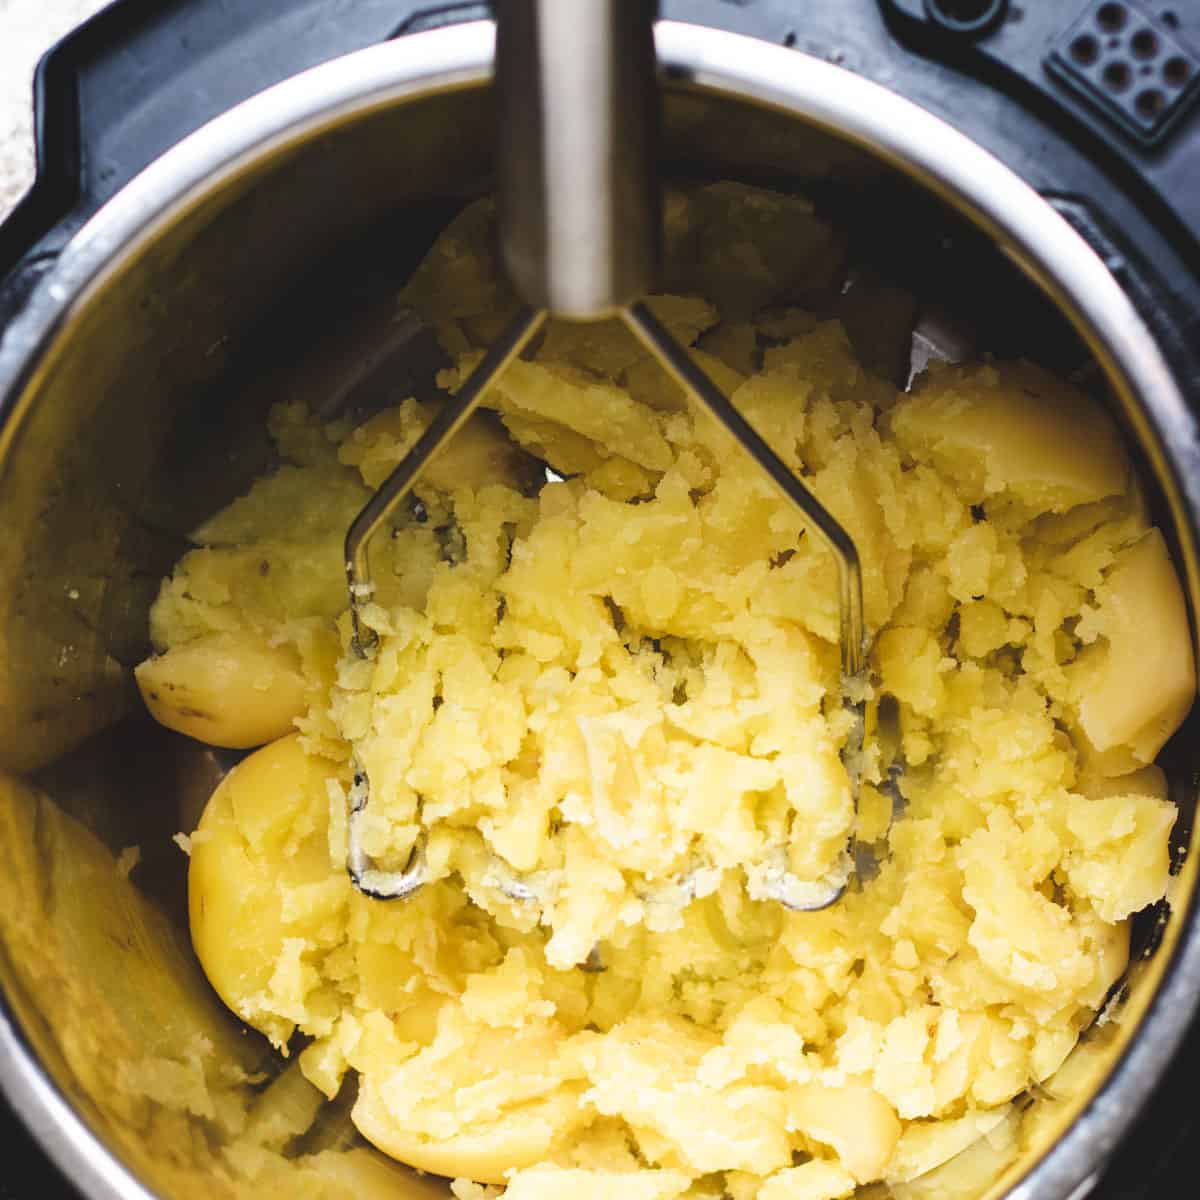 Mashing yukon gold potatoes.